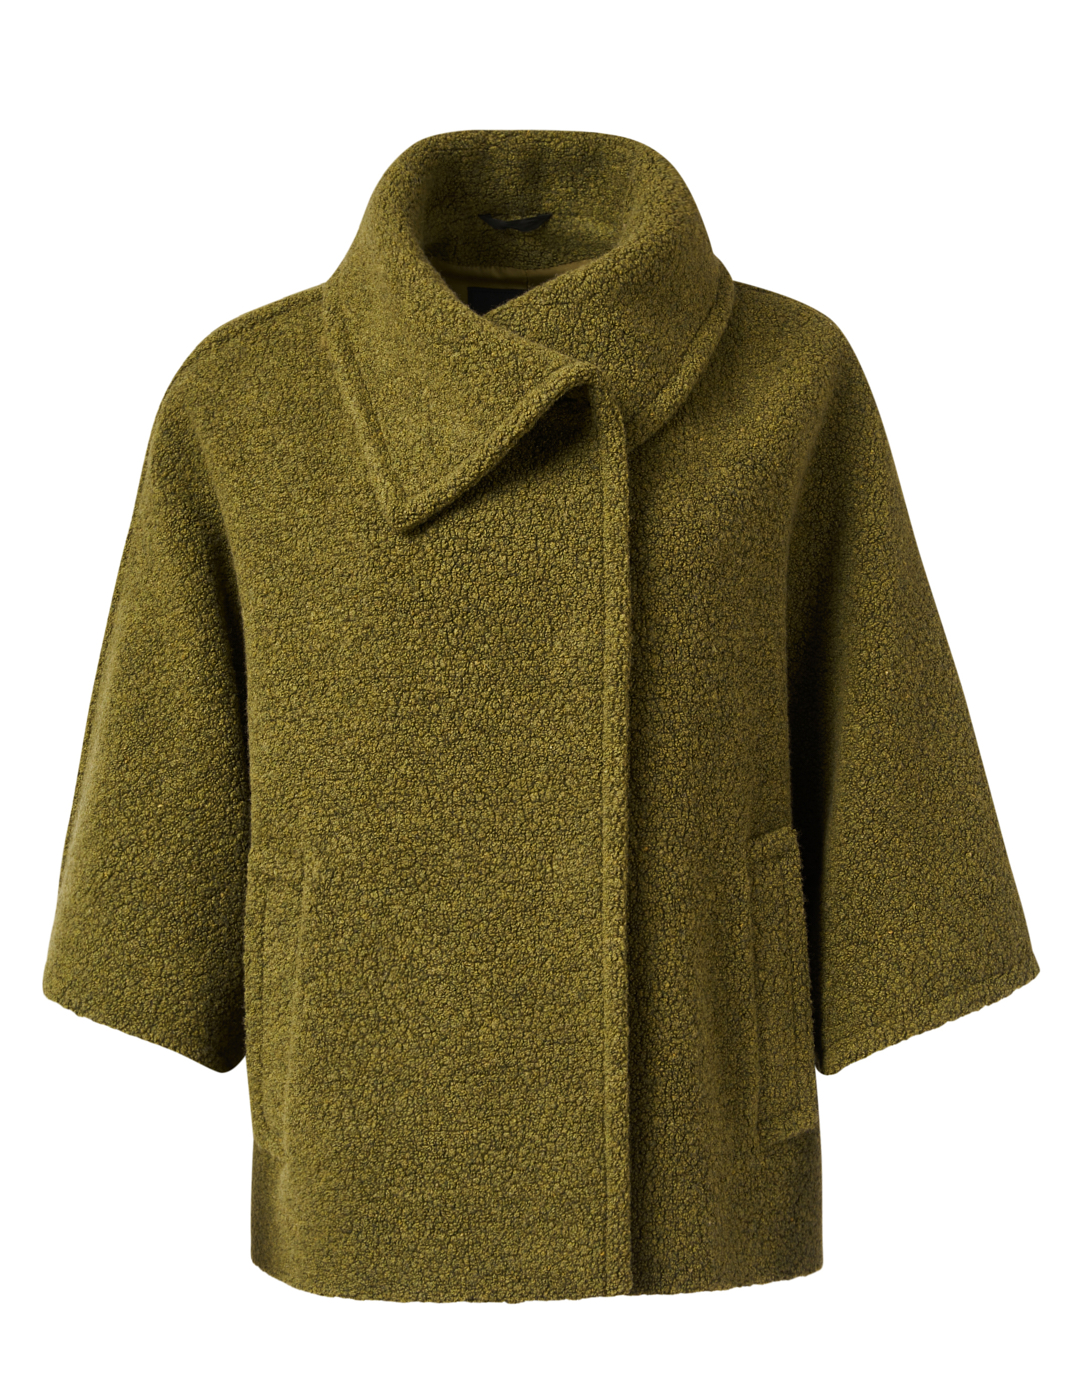 Women's Green Wool & Wool-Blend Coats